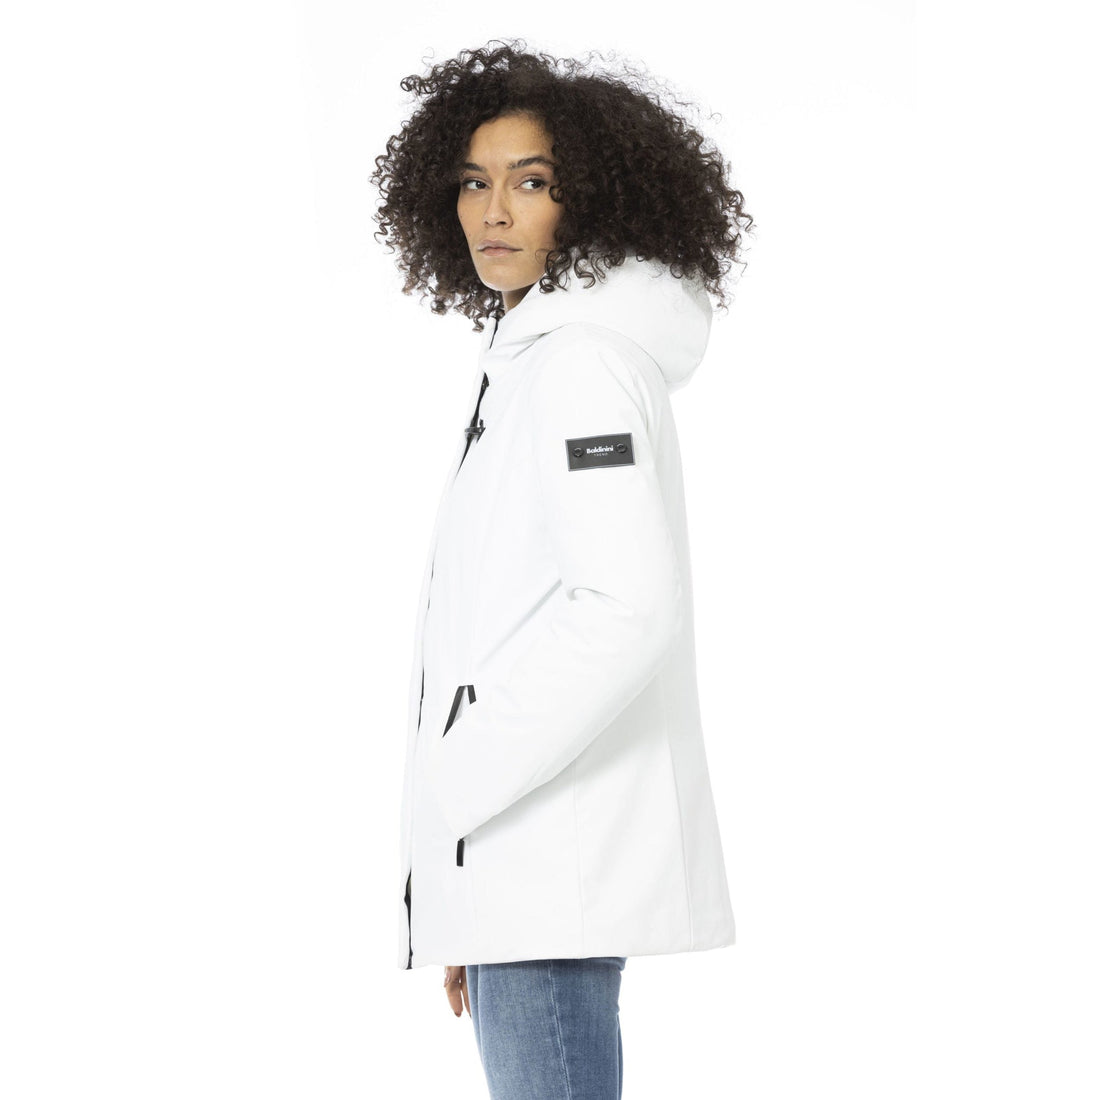 Baldinini Trend Sleek White Down Jacket with Adjustable Hood